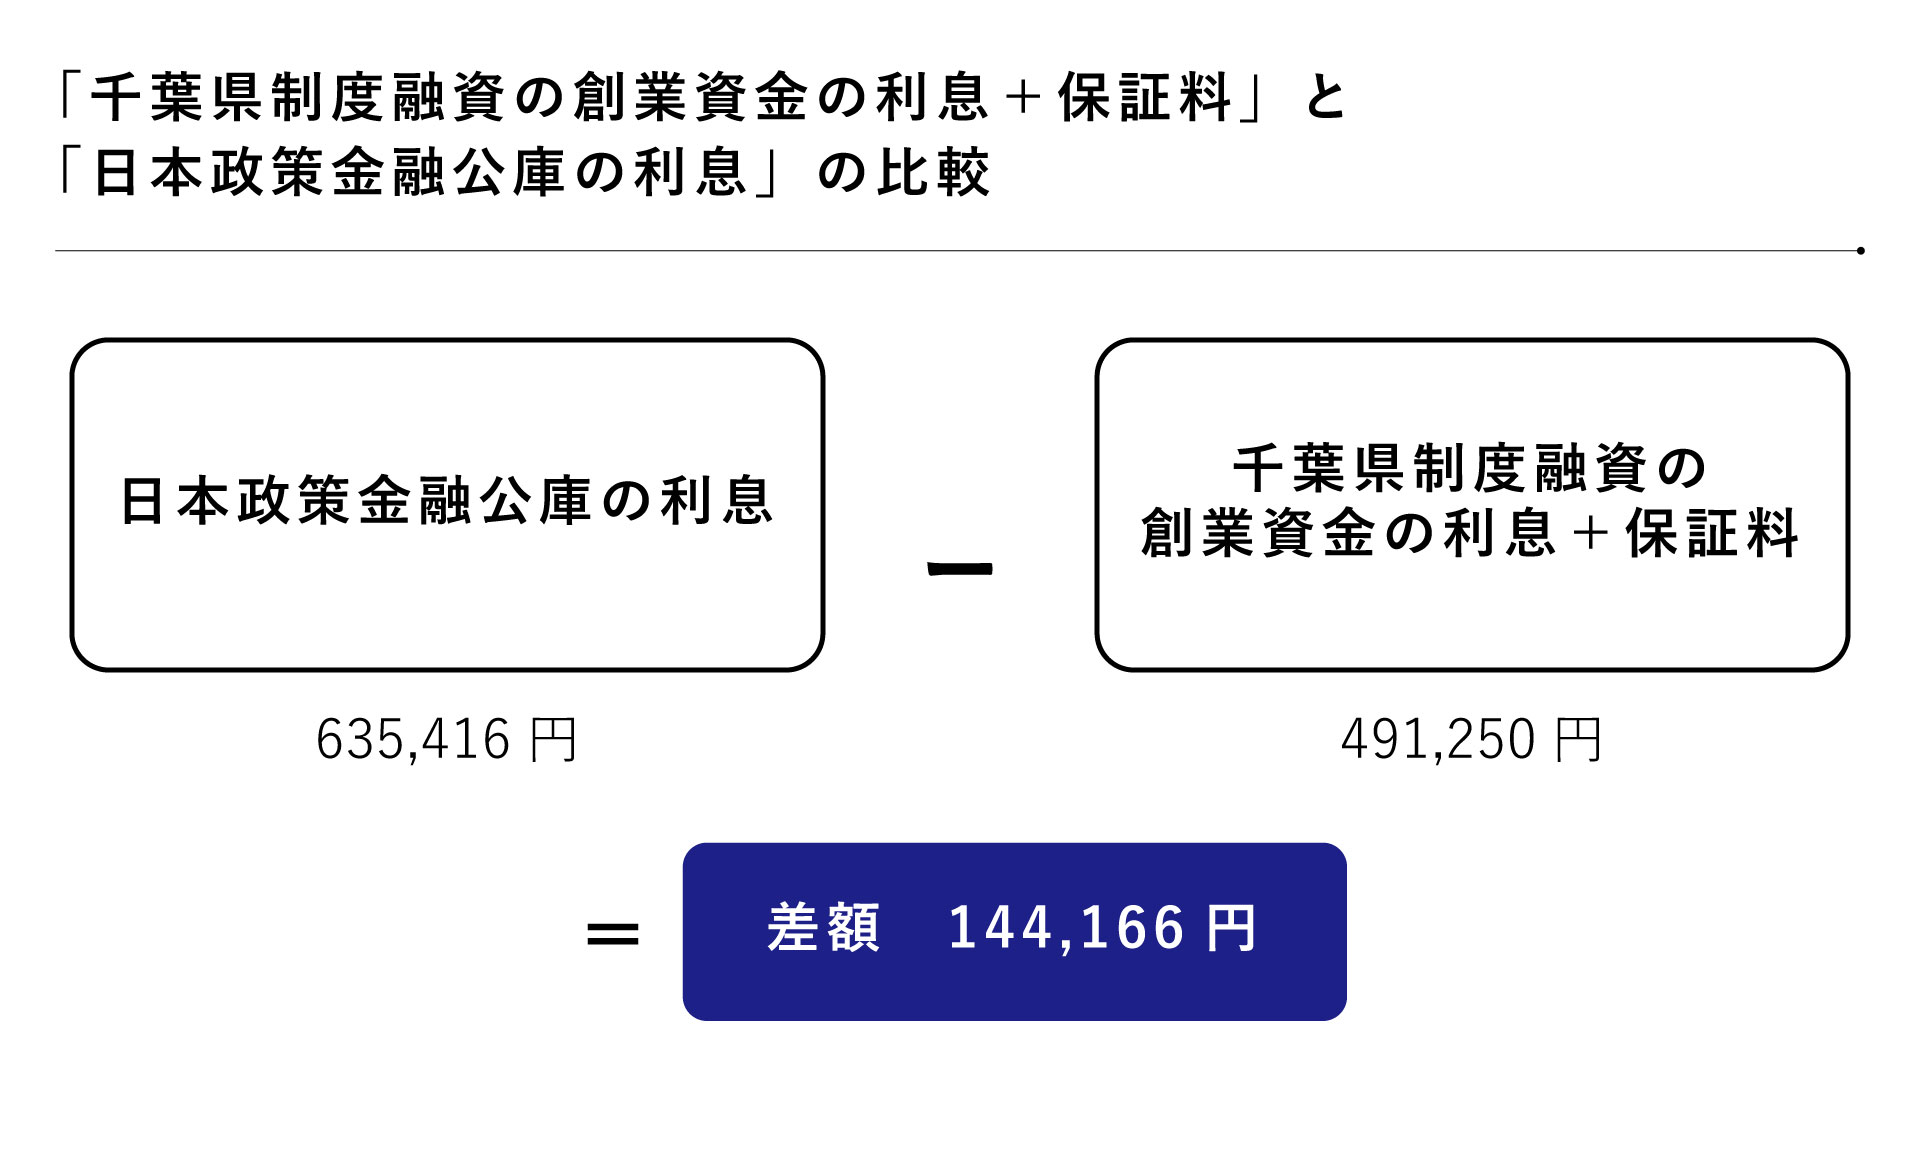 千葉県制度融資の創業資金の利息＋保証料と日本政策金融公庫の利息の比較